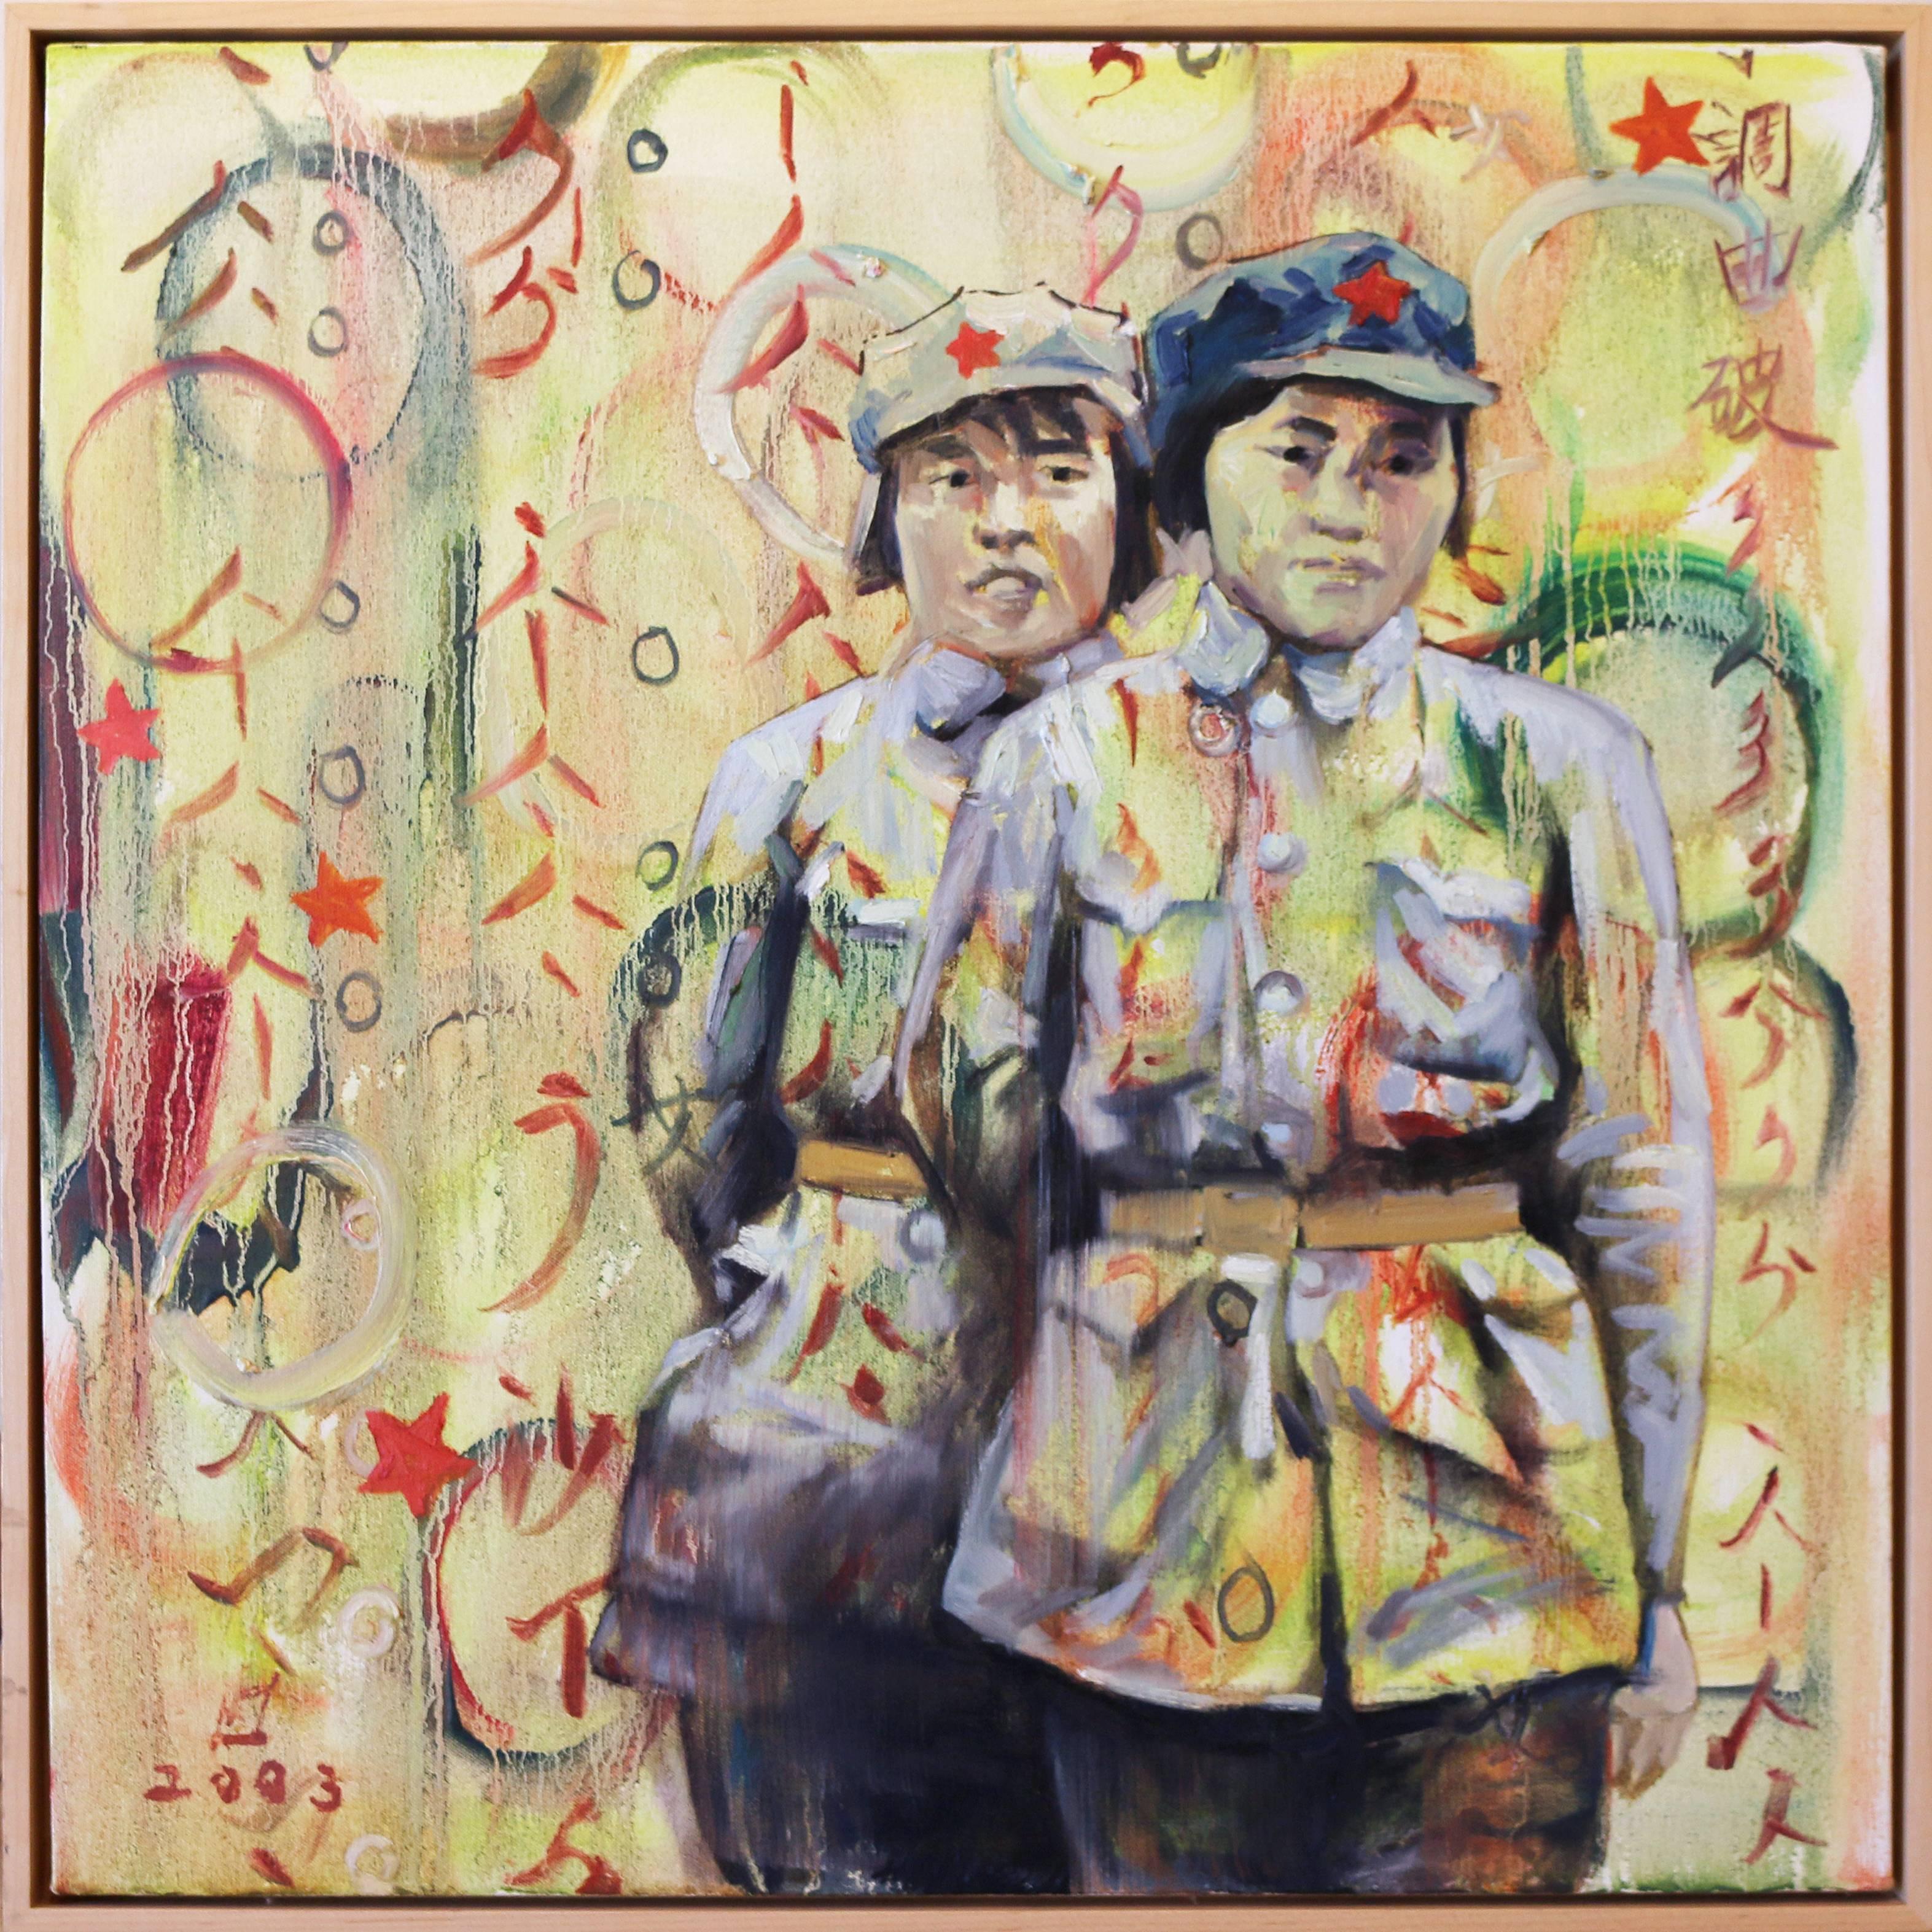 Hung Liu Figurative Painting - Women Warriors II